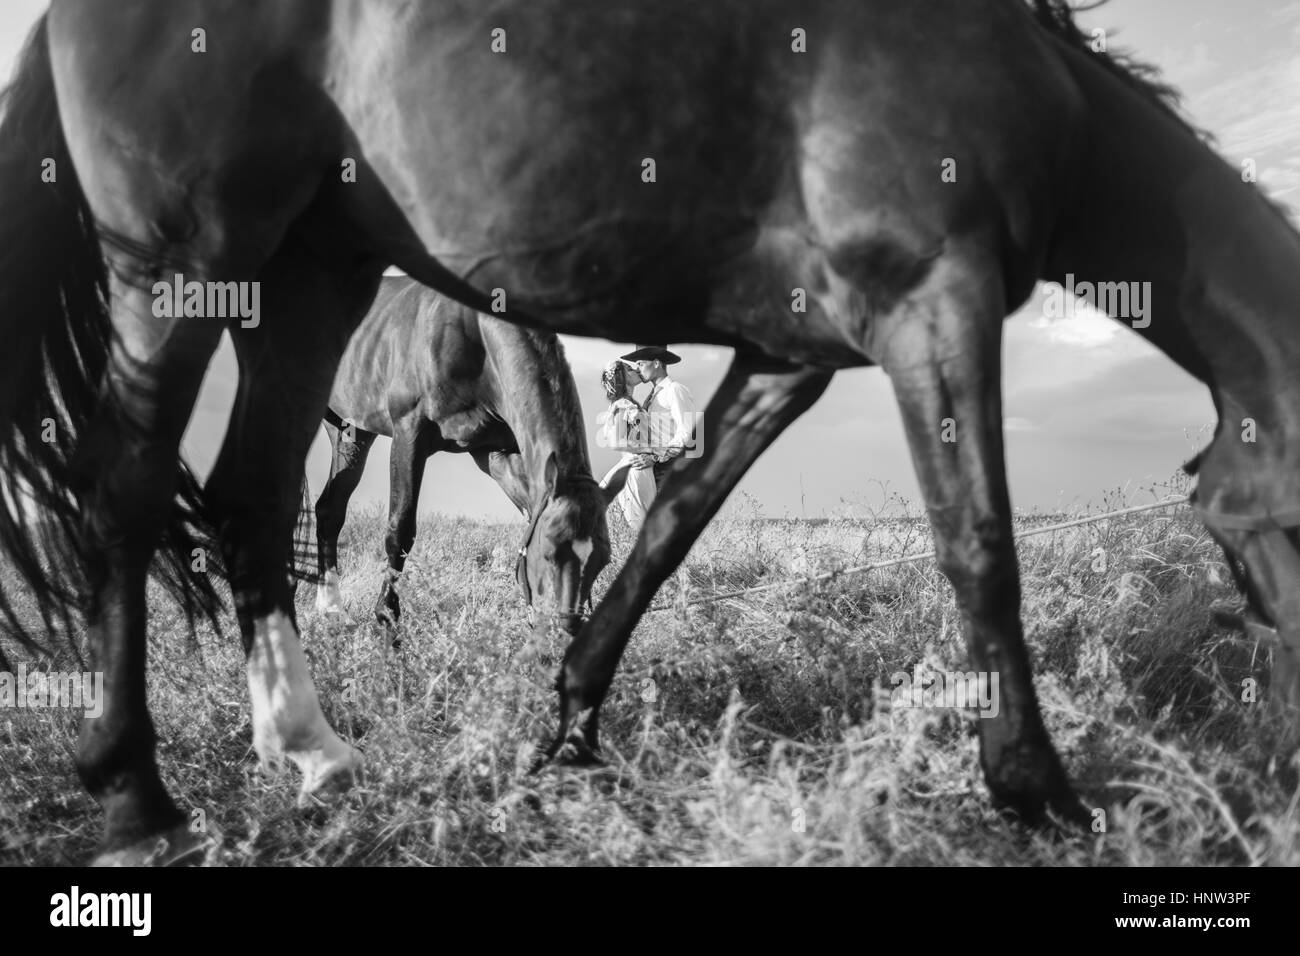 Les chevaux lointain encadrement Caucasian couple kissing Banque D'Images